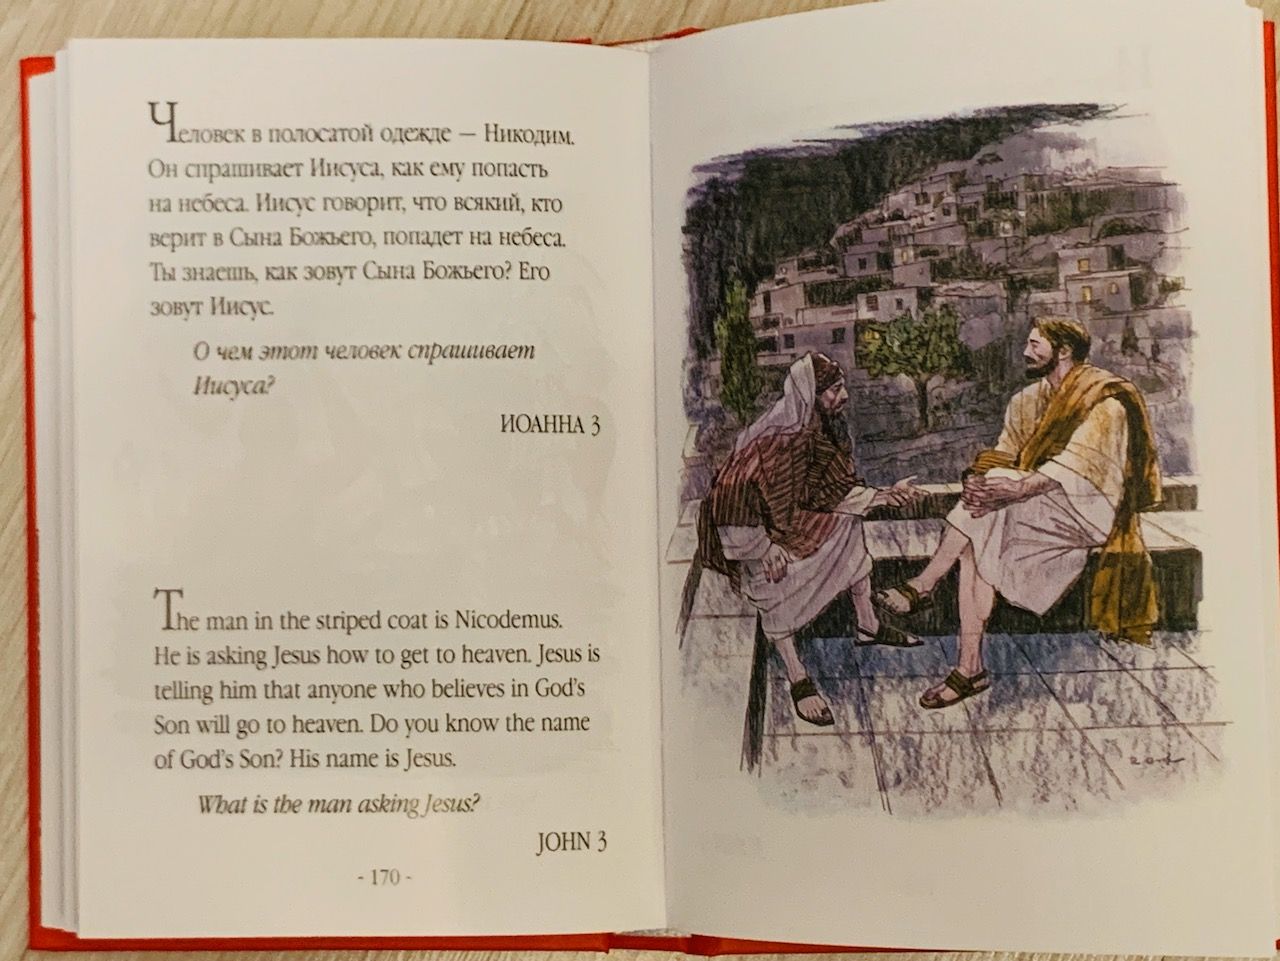 Моя первая библия в картинках. На русском и английском языке